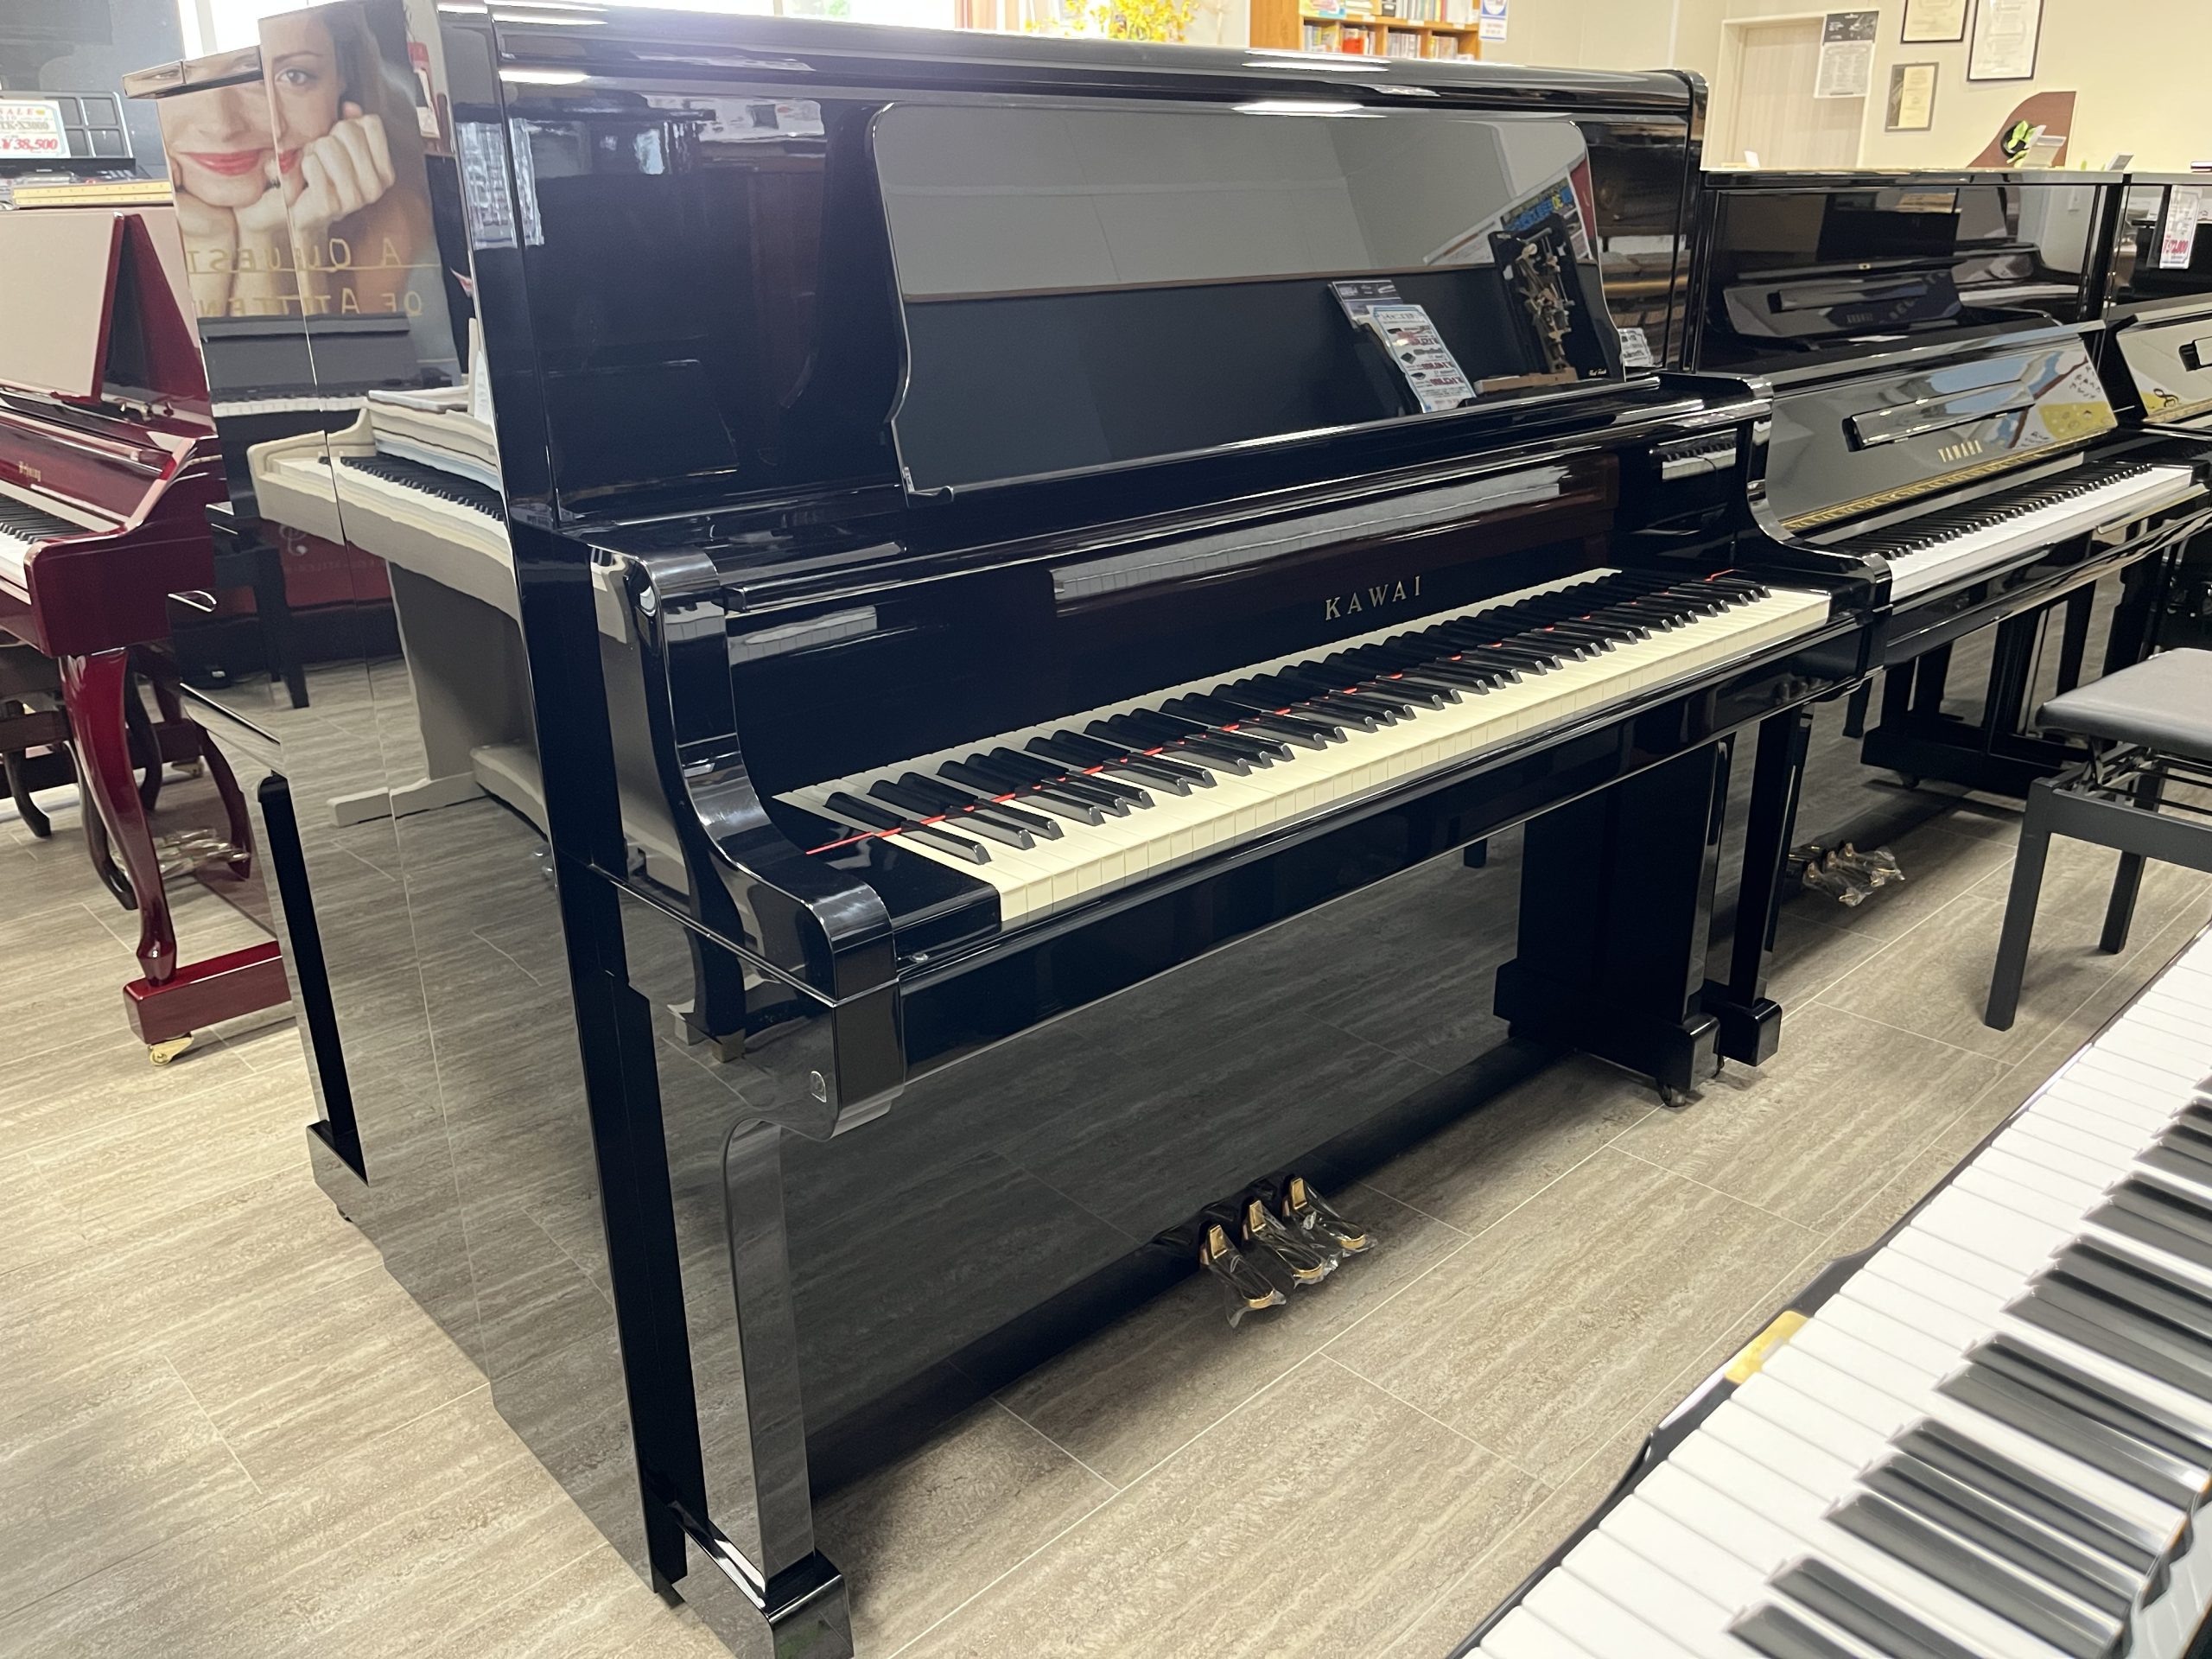 アップライトピアノ 中古 カワイ HA-20 - 鍵盤楽器、ピアノ